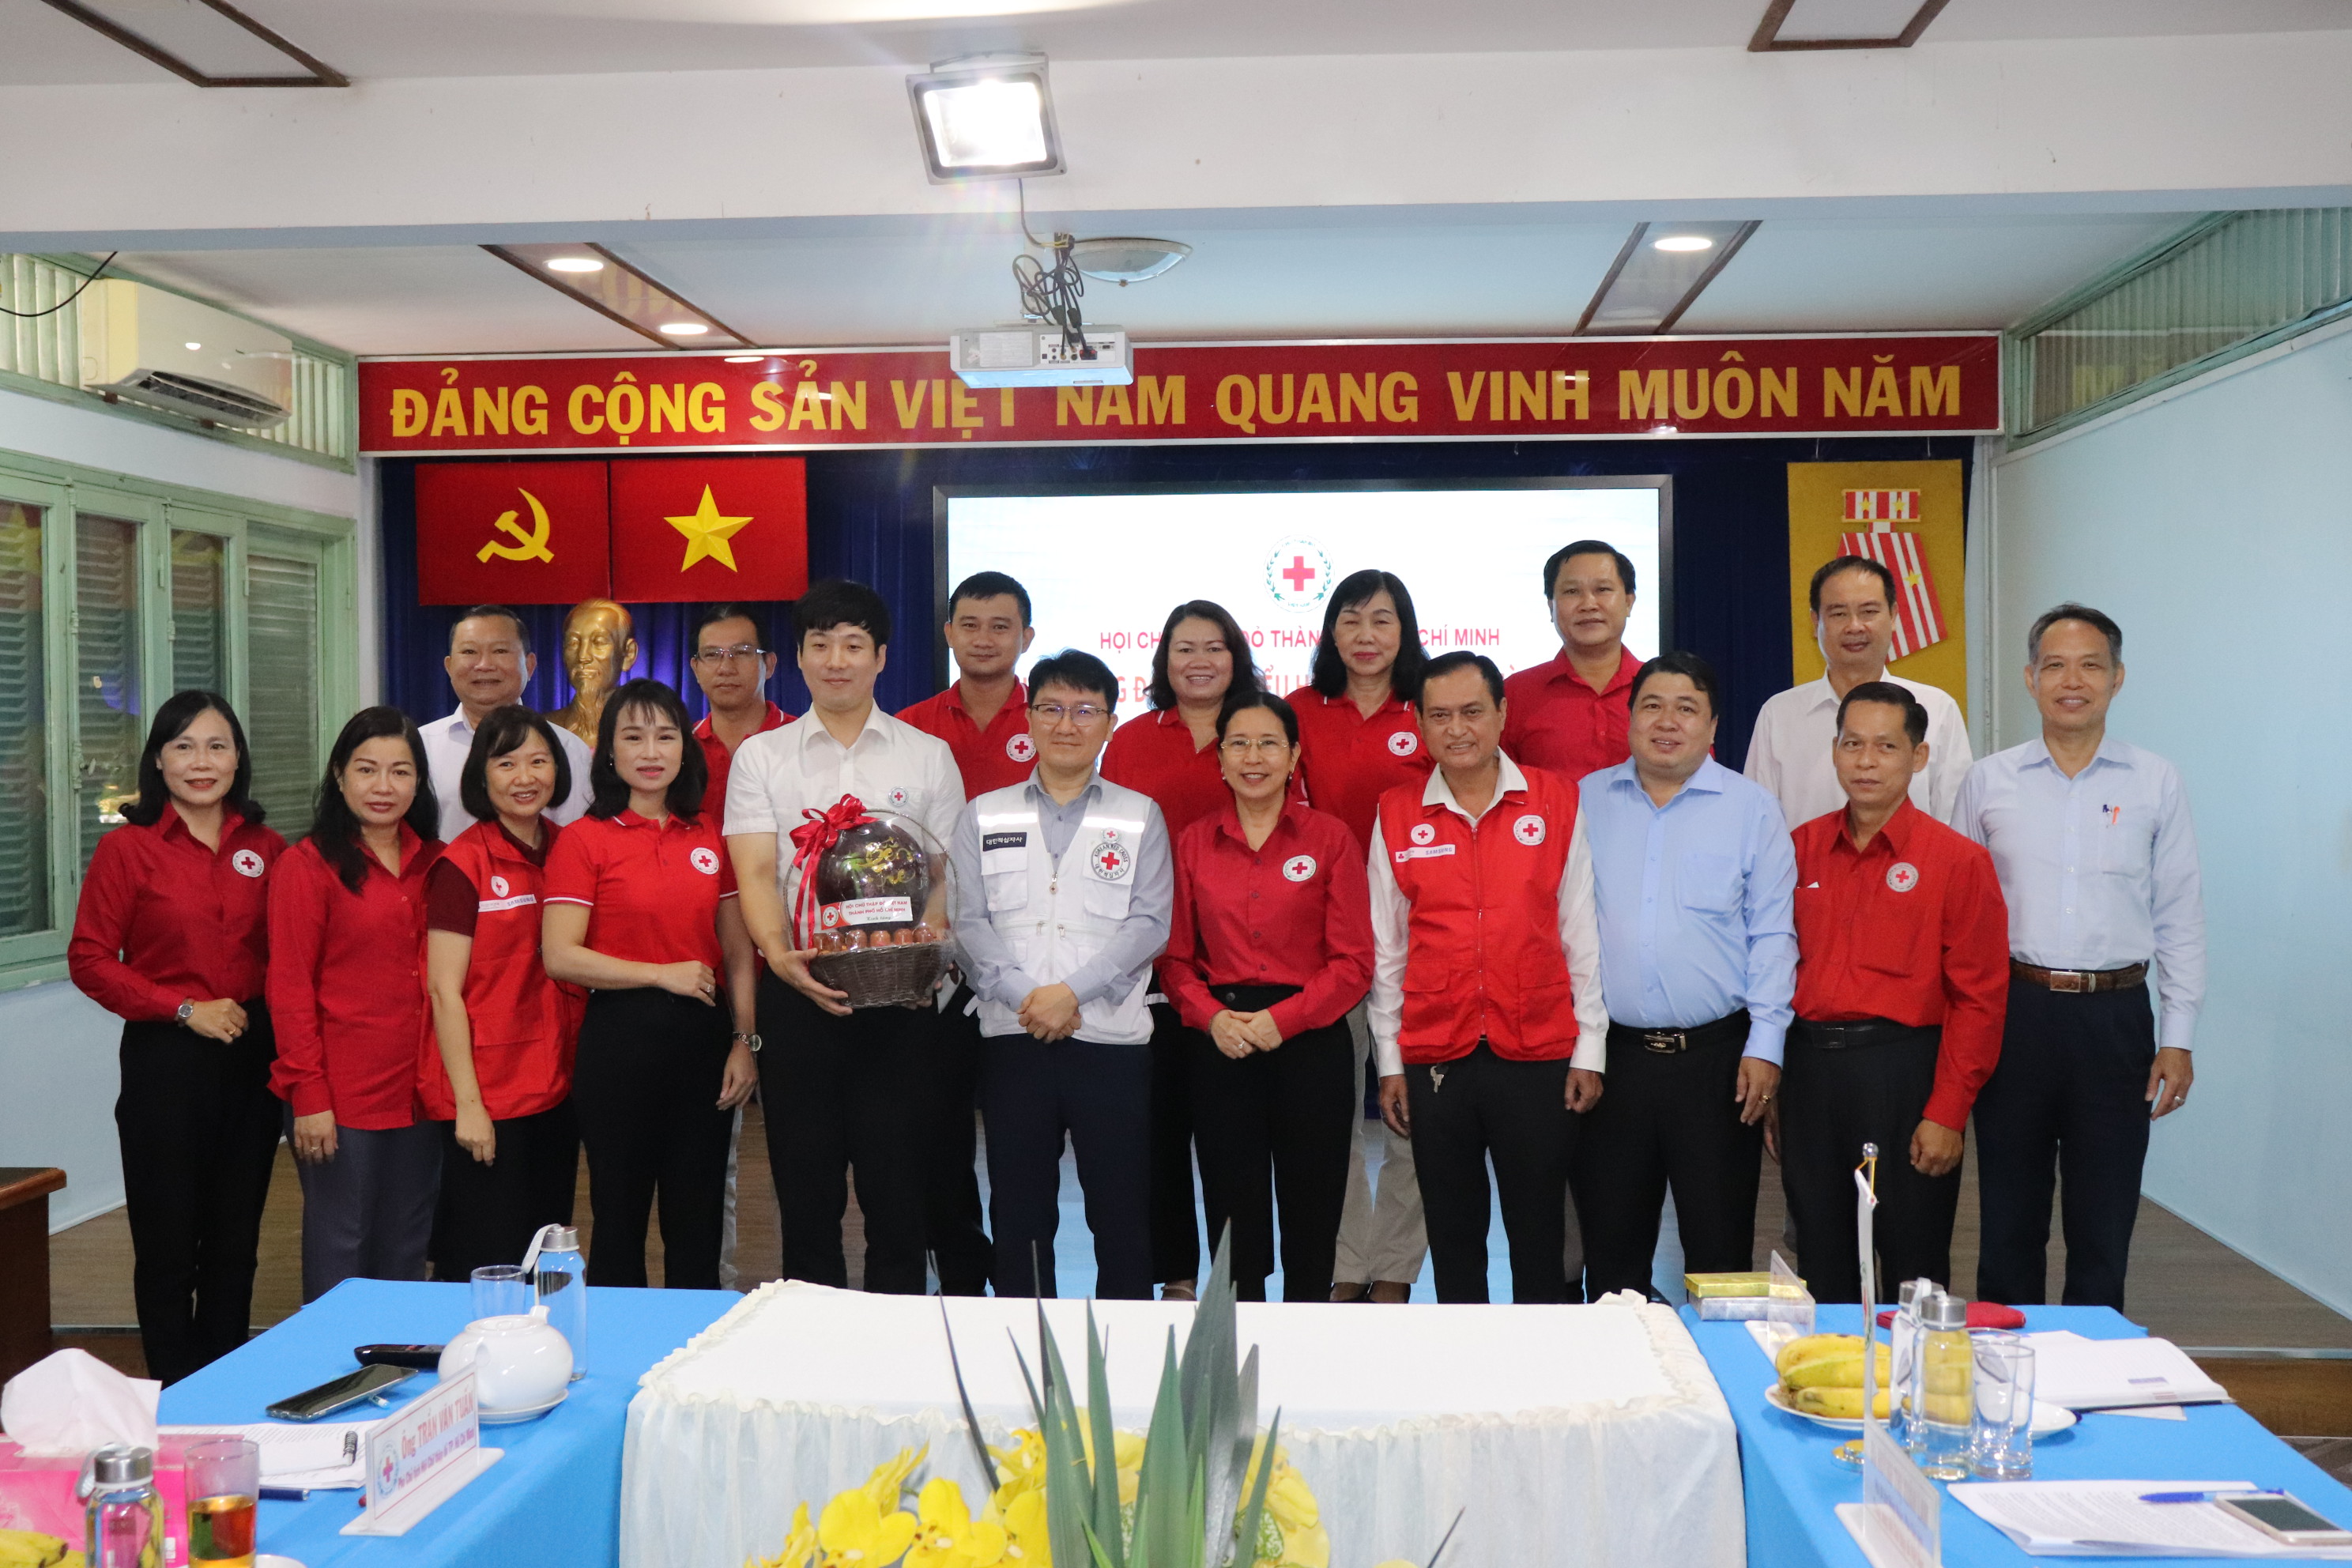 Đoàn đại biểu Hội Chữ thập đỏ Hàn Quốc thăm và làm việc tại Thành phố Hồ Chí Minh